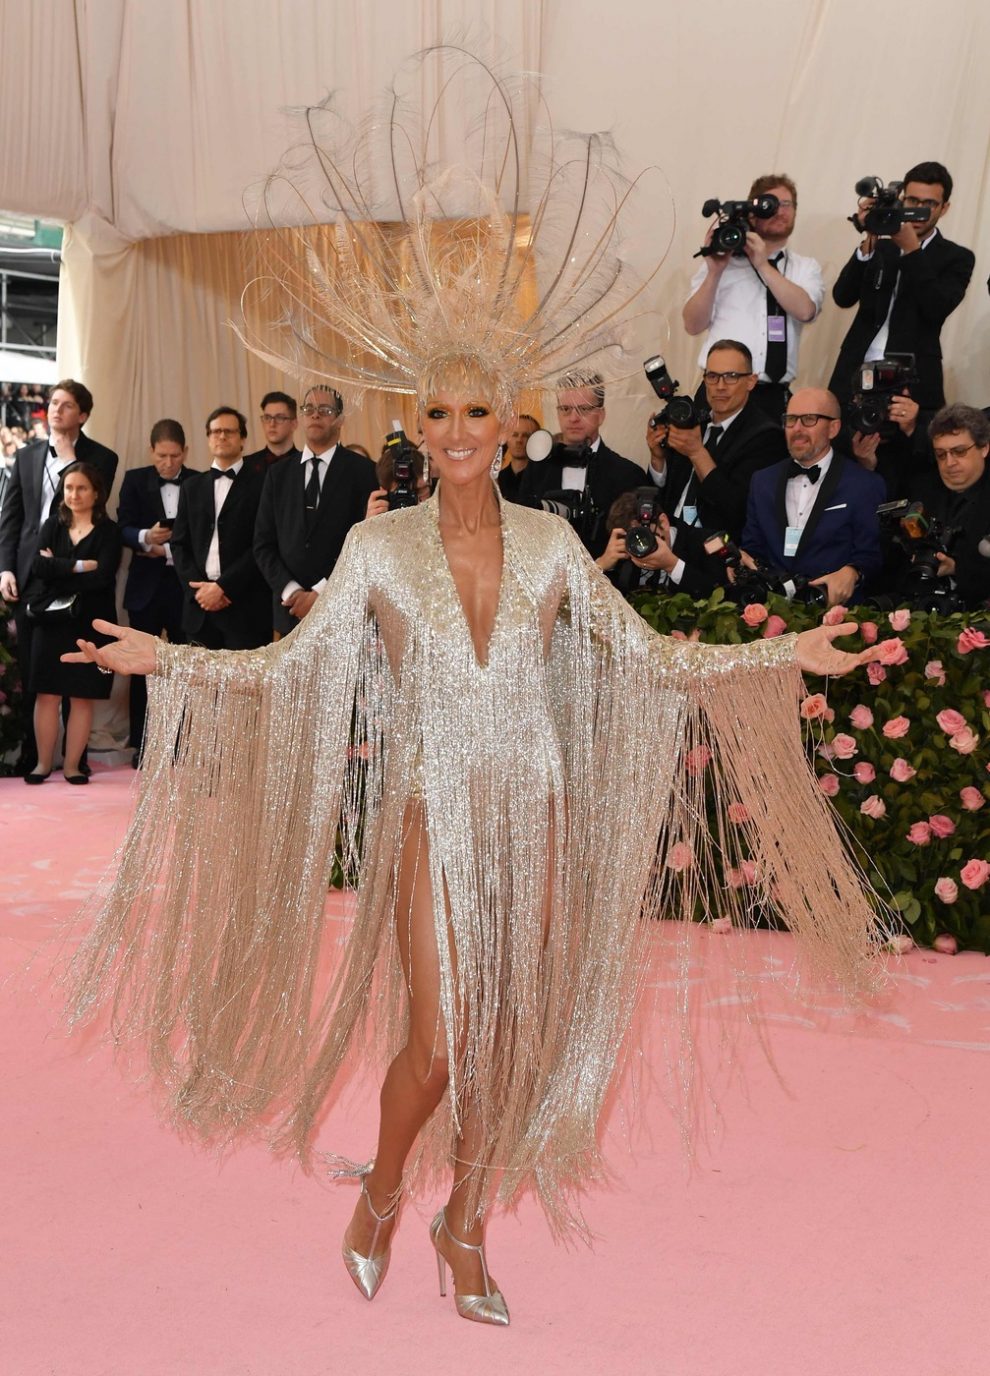 Canadian singer Celine Dion arrives for the 2019 Met Gala